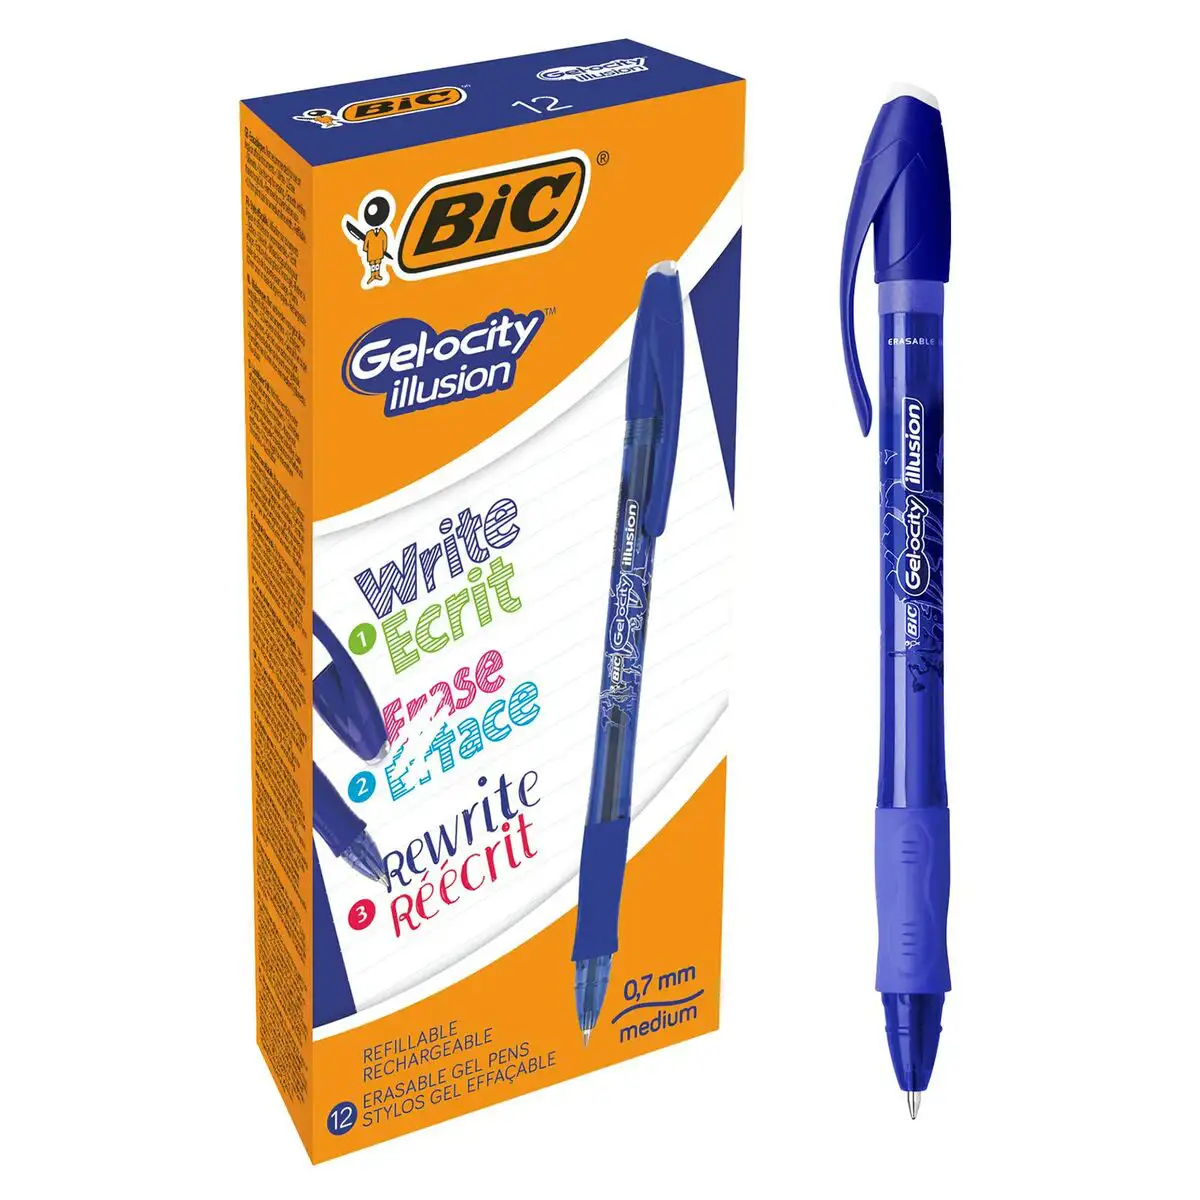 Crayon bic bleu 12 uds reconditionne b _6111. DIAYTAR SENEGAL - Votre Boutique en Ligne, Votre Choix Illimité. Parcourez nos rayons et découvrez des produits qui vous inspirent, de la mode à la maison et bien plus.